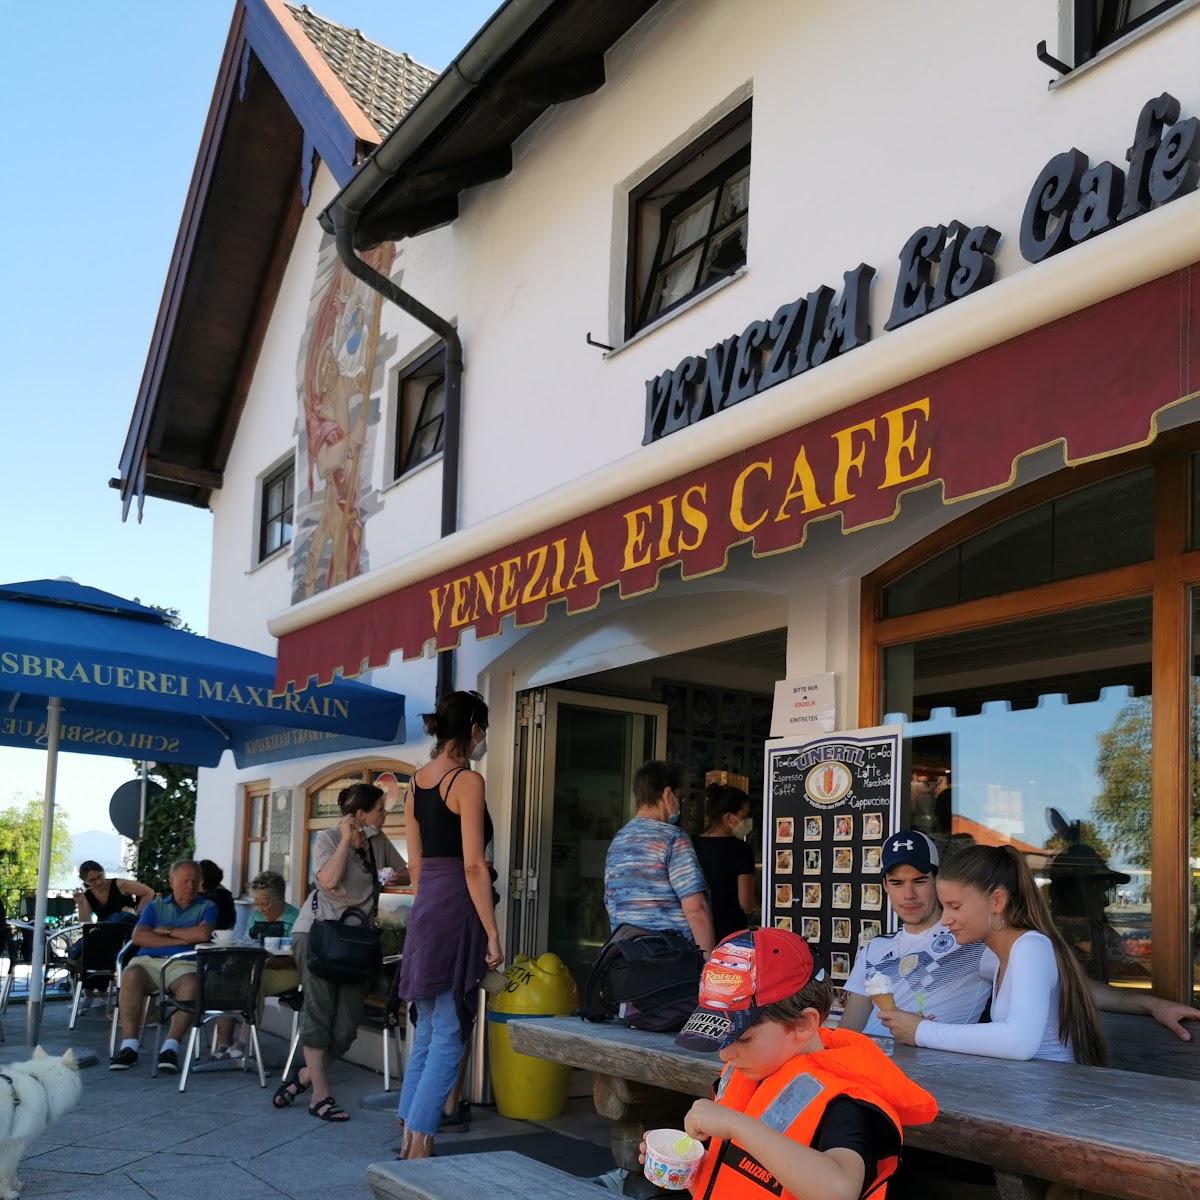 Restaurant "Eiscafé Venezia" in Gstadt am Chiemsee